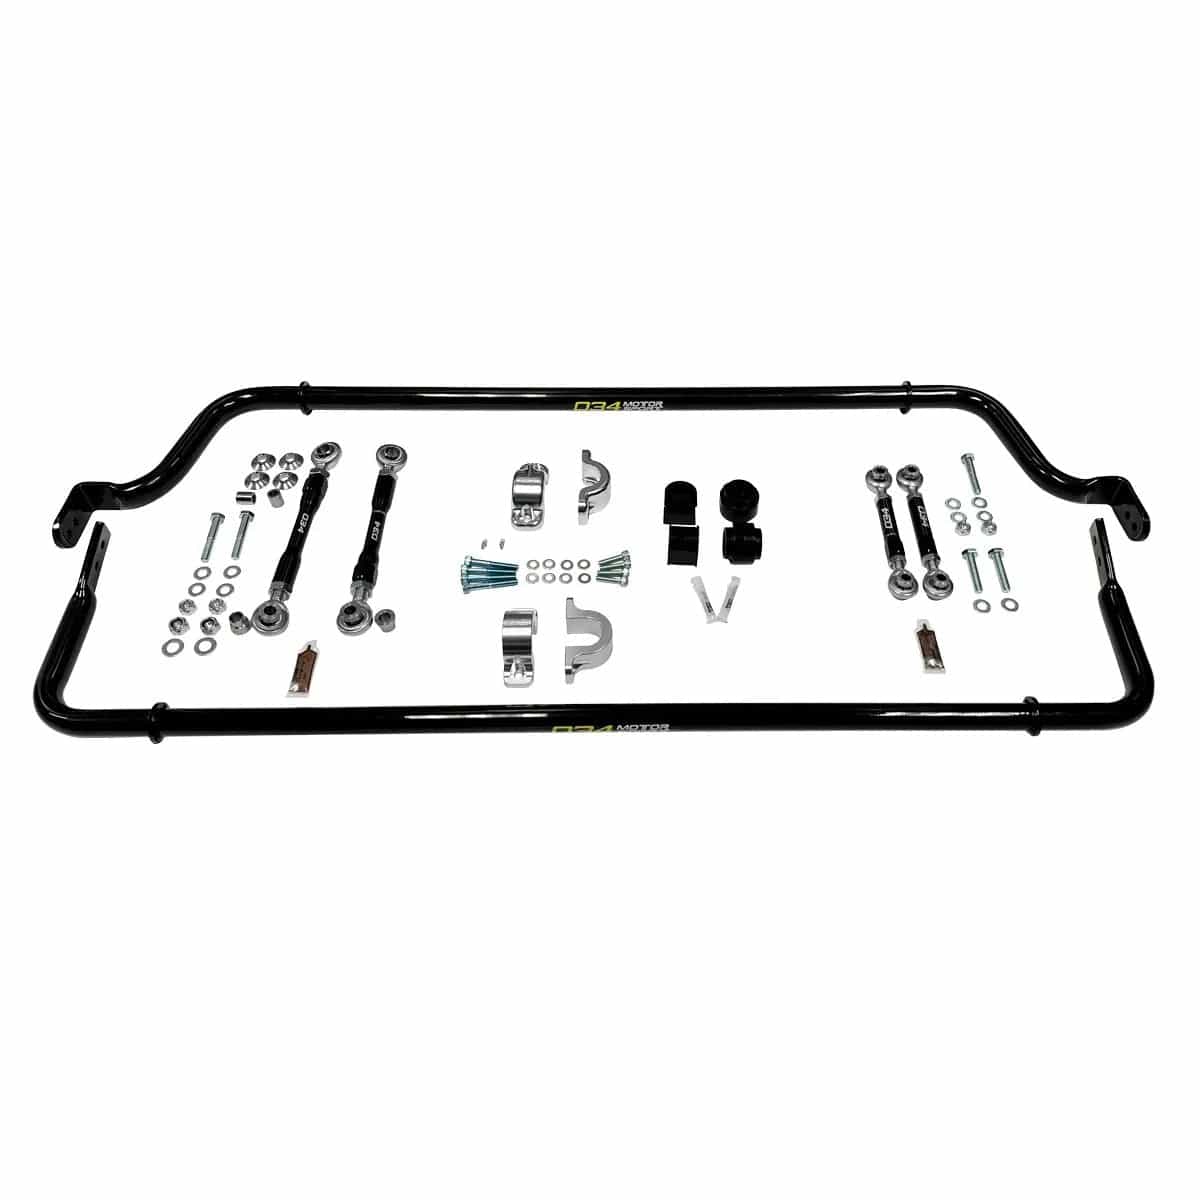 034 Motorsport Dynamic+ Adjustable Sway Bar Bundle Package - VW/Audi / 4.2L / V8 / 5.2L / V10 / Gen 1 / Gen 1.5 / R8